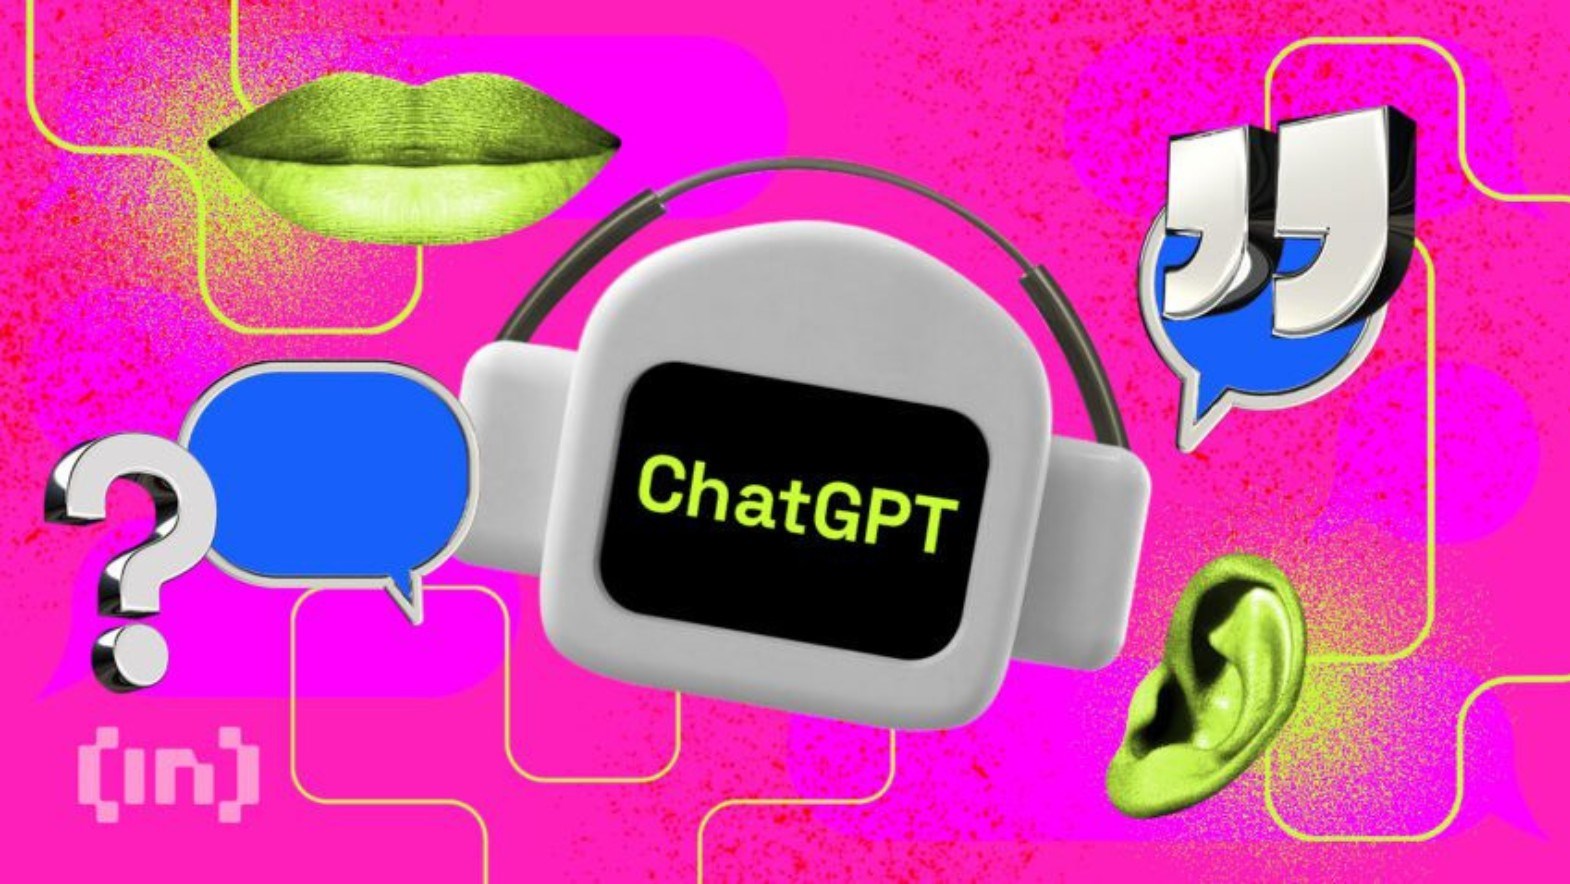 ChatGPT sohbet robotu Time dergisine kapak oldu